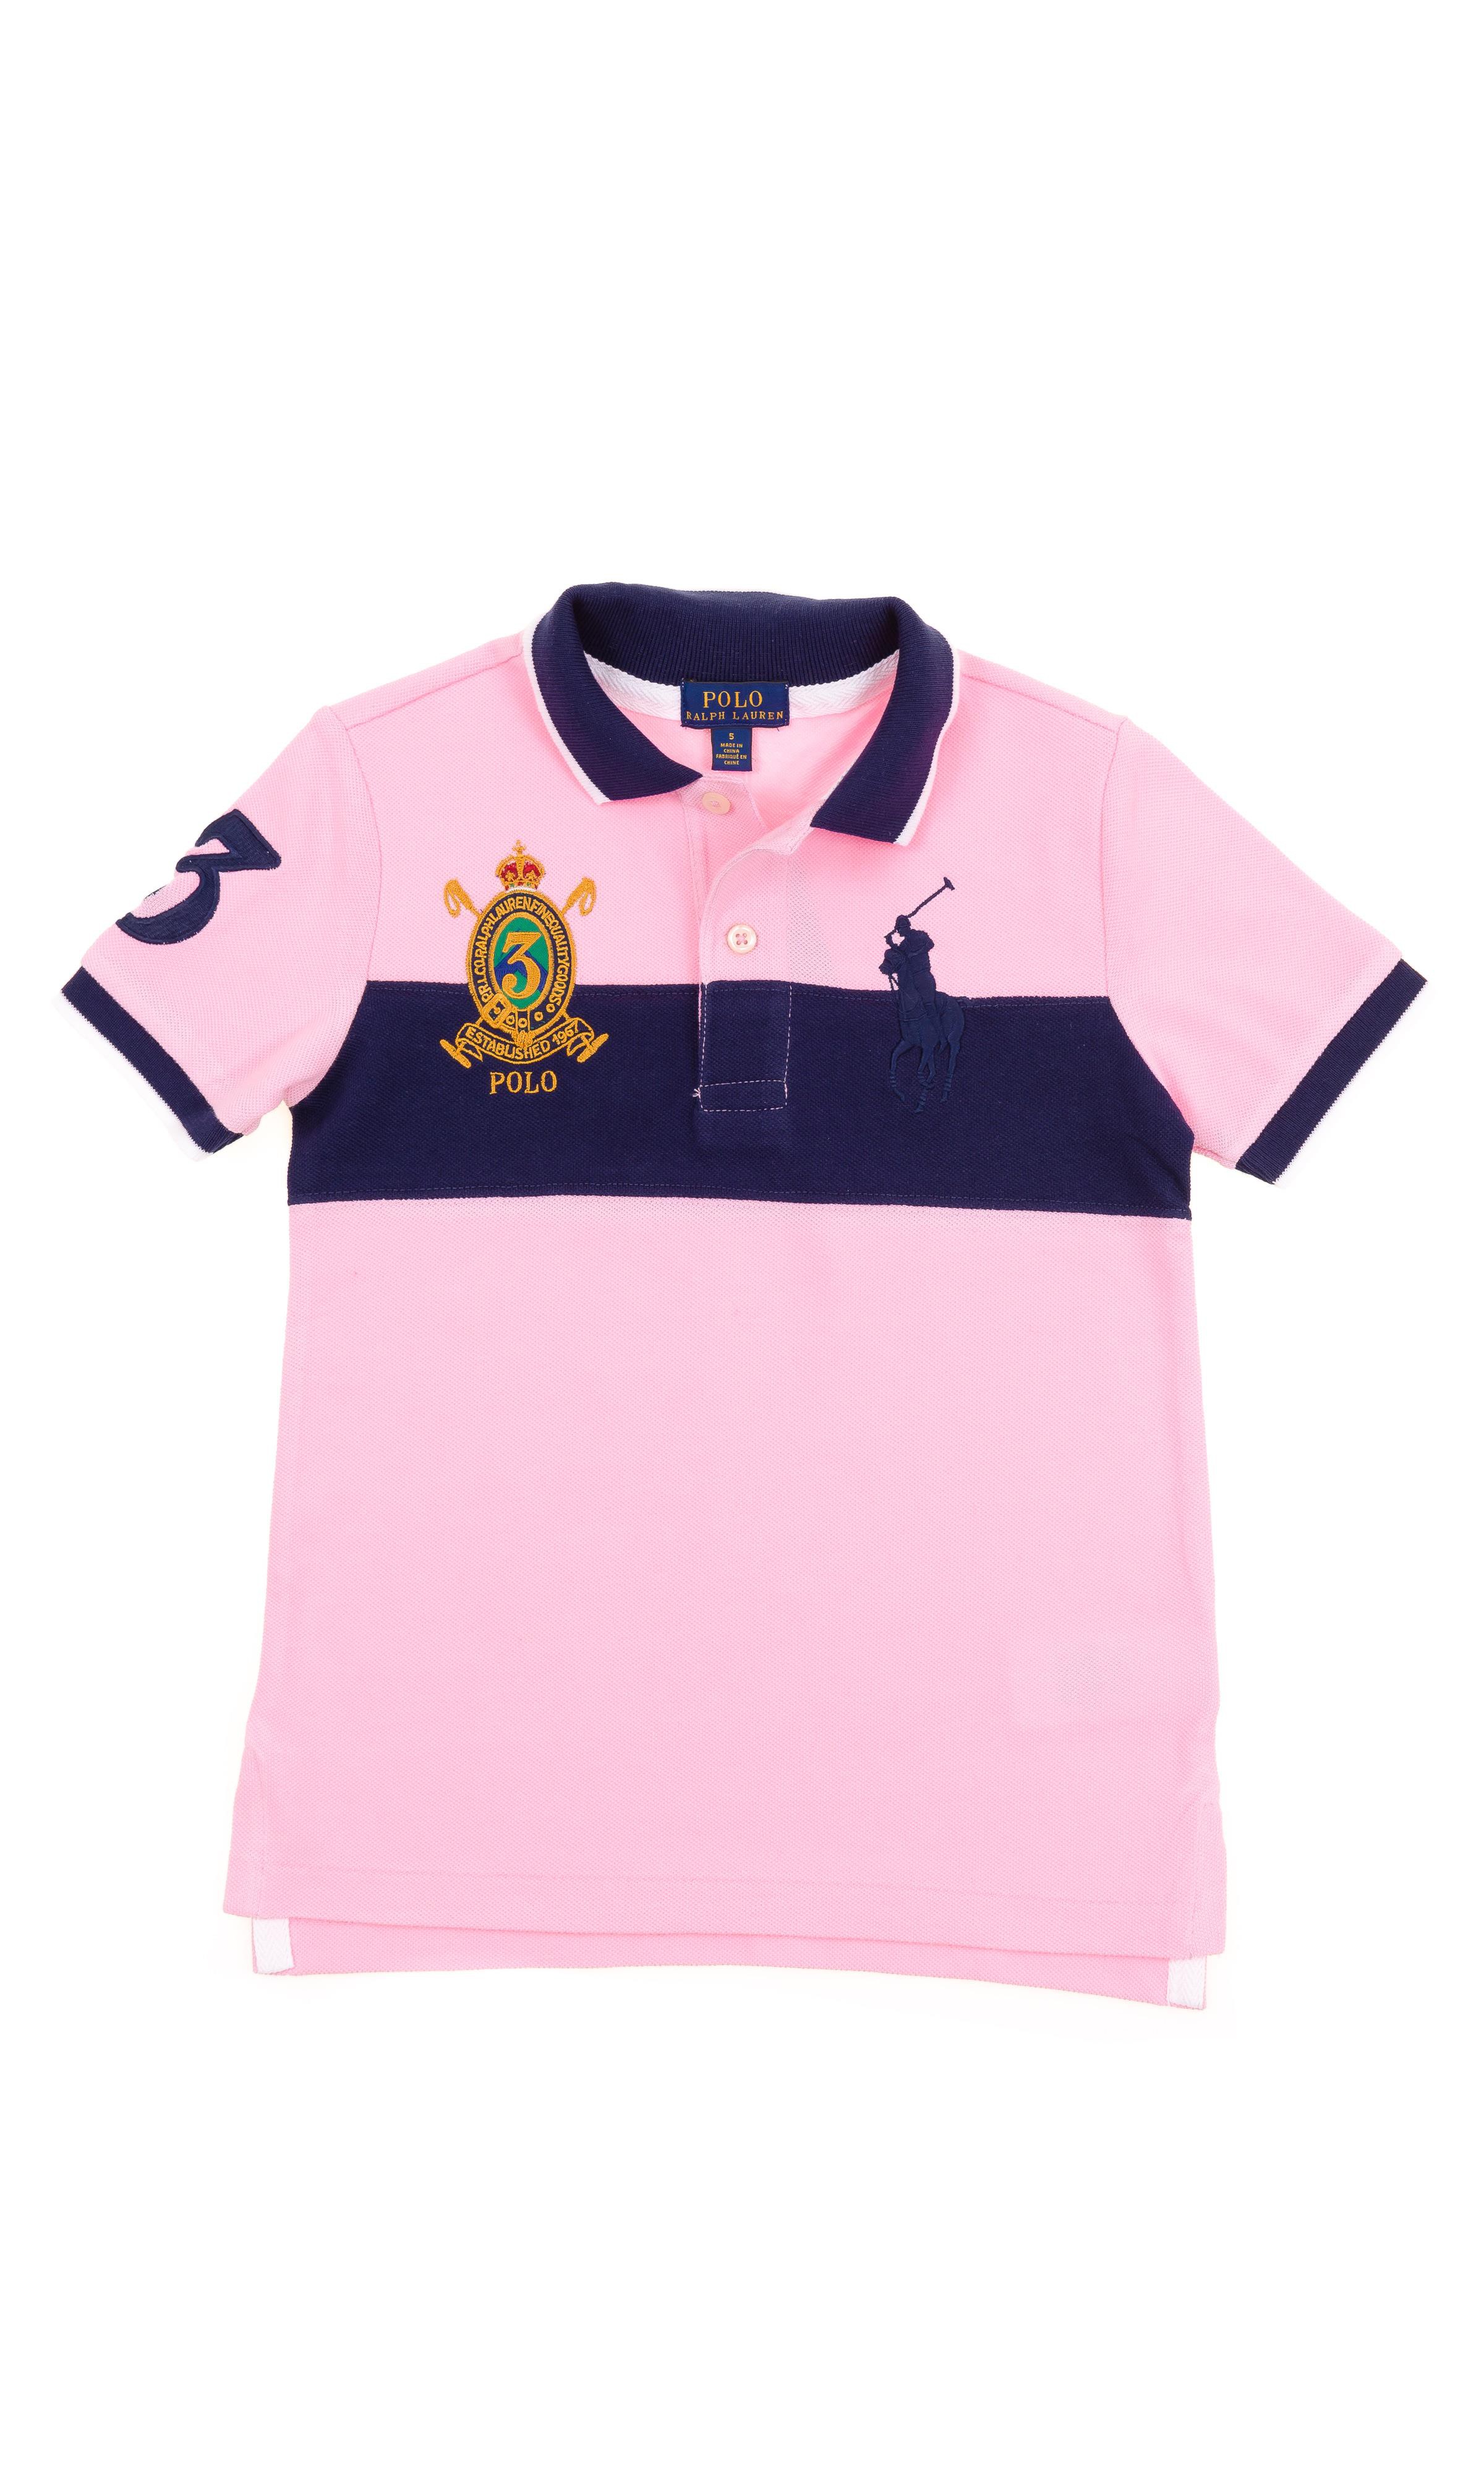 pink and blue ralph lauren shirt